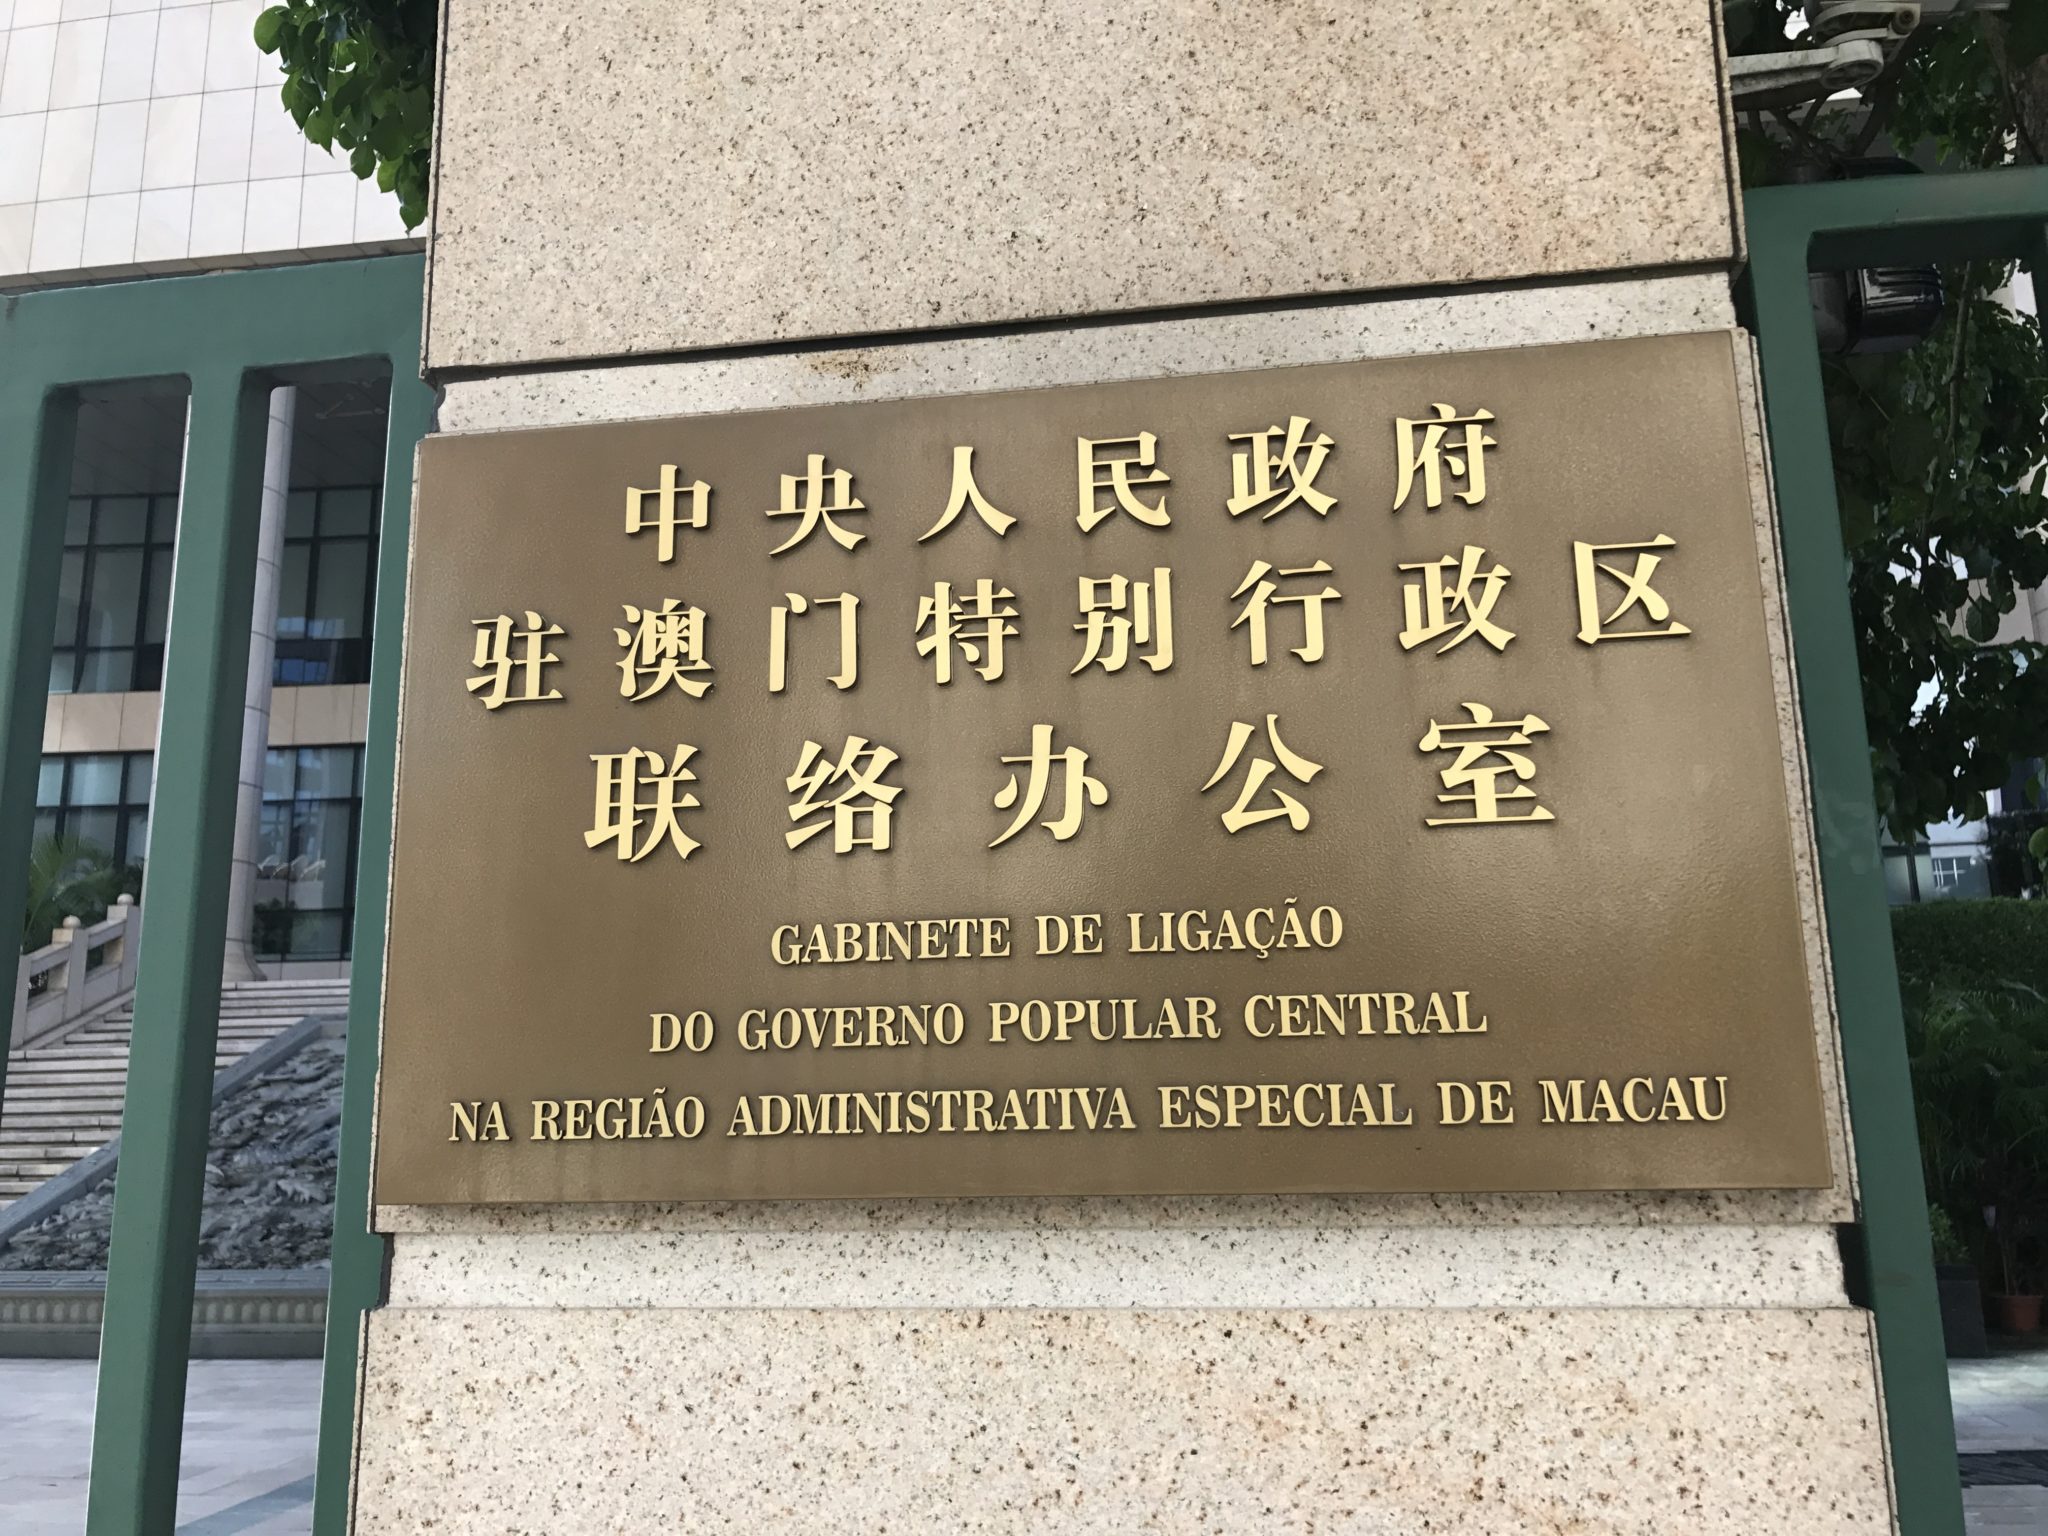 “Jurisdição geral” de Pequim essencial para “novo capítulo” em Macau, diz Gabinete de Ligação